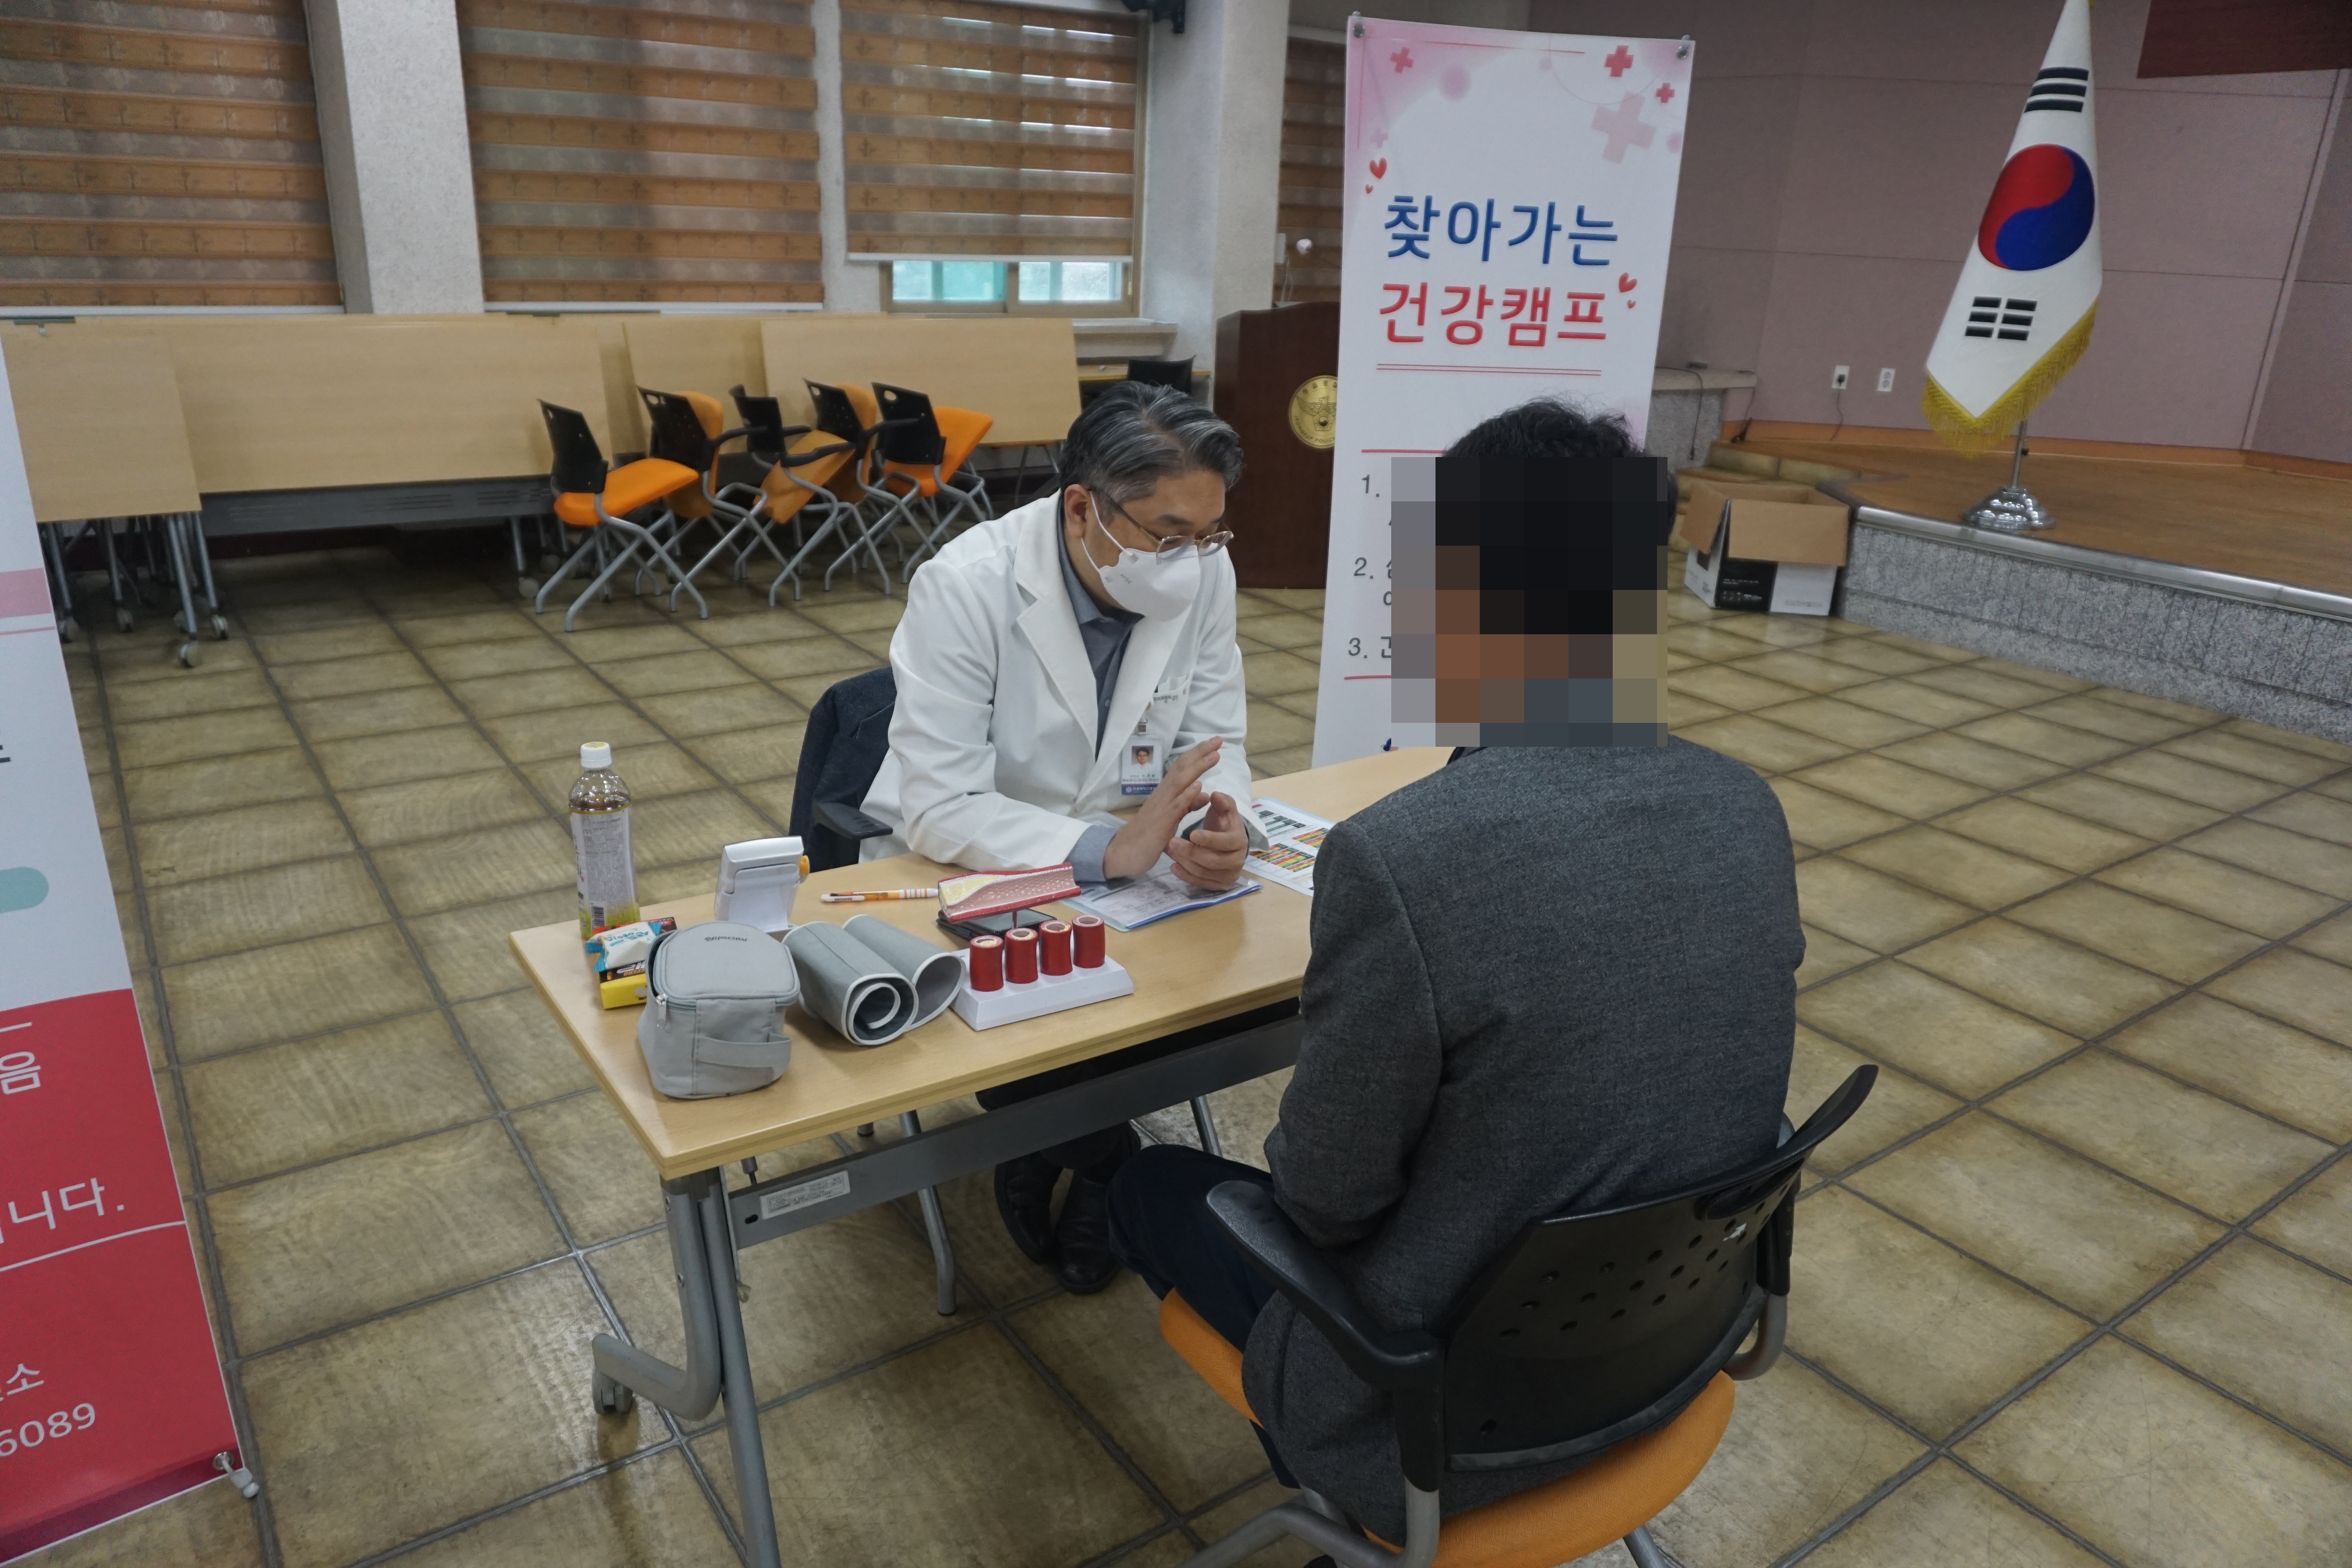 2021년 11월 9일 지역사회 제34차 정읍경찰서 혈관건강캠프